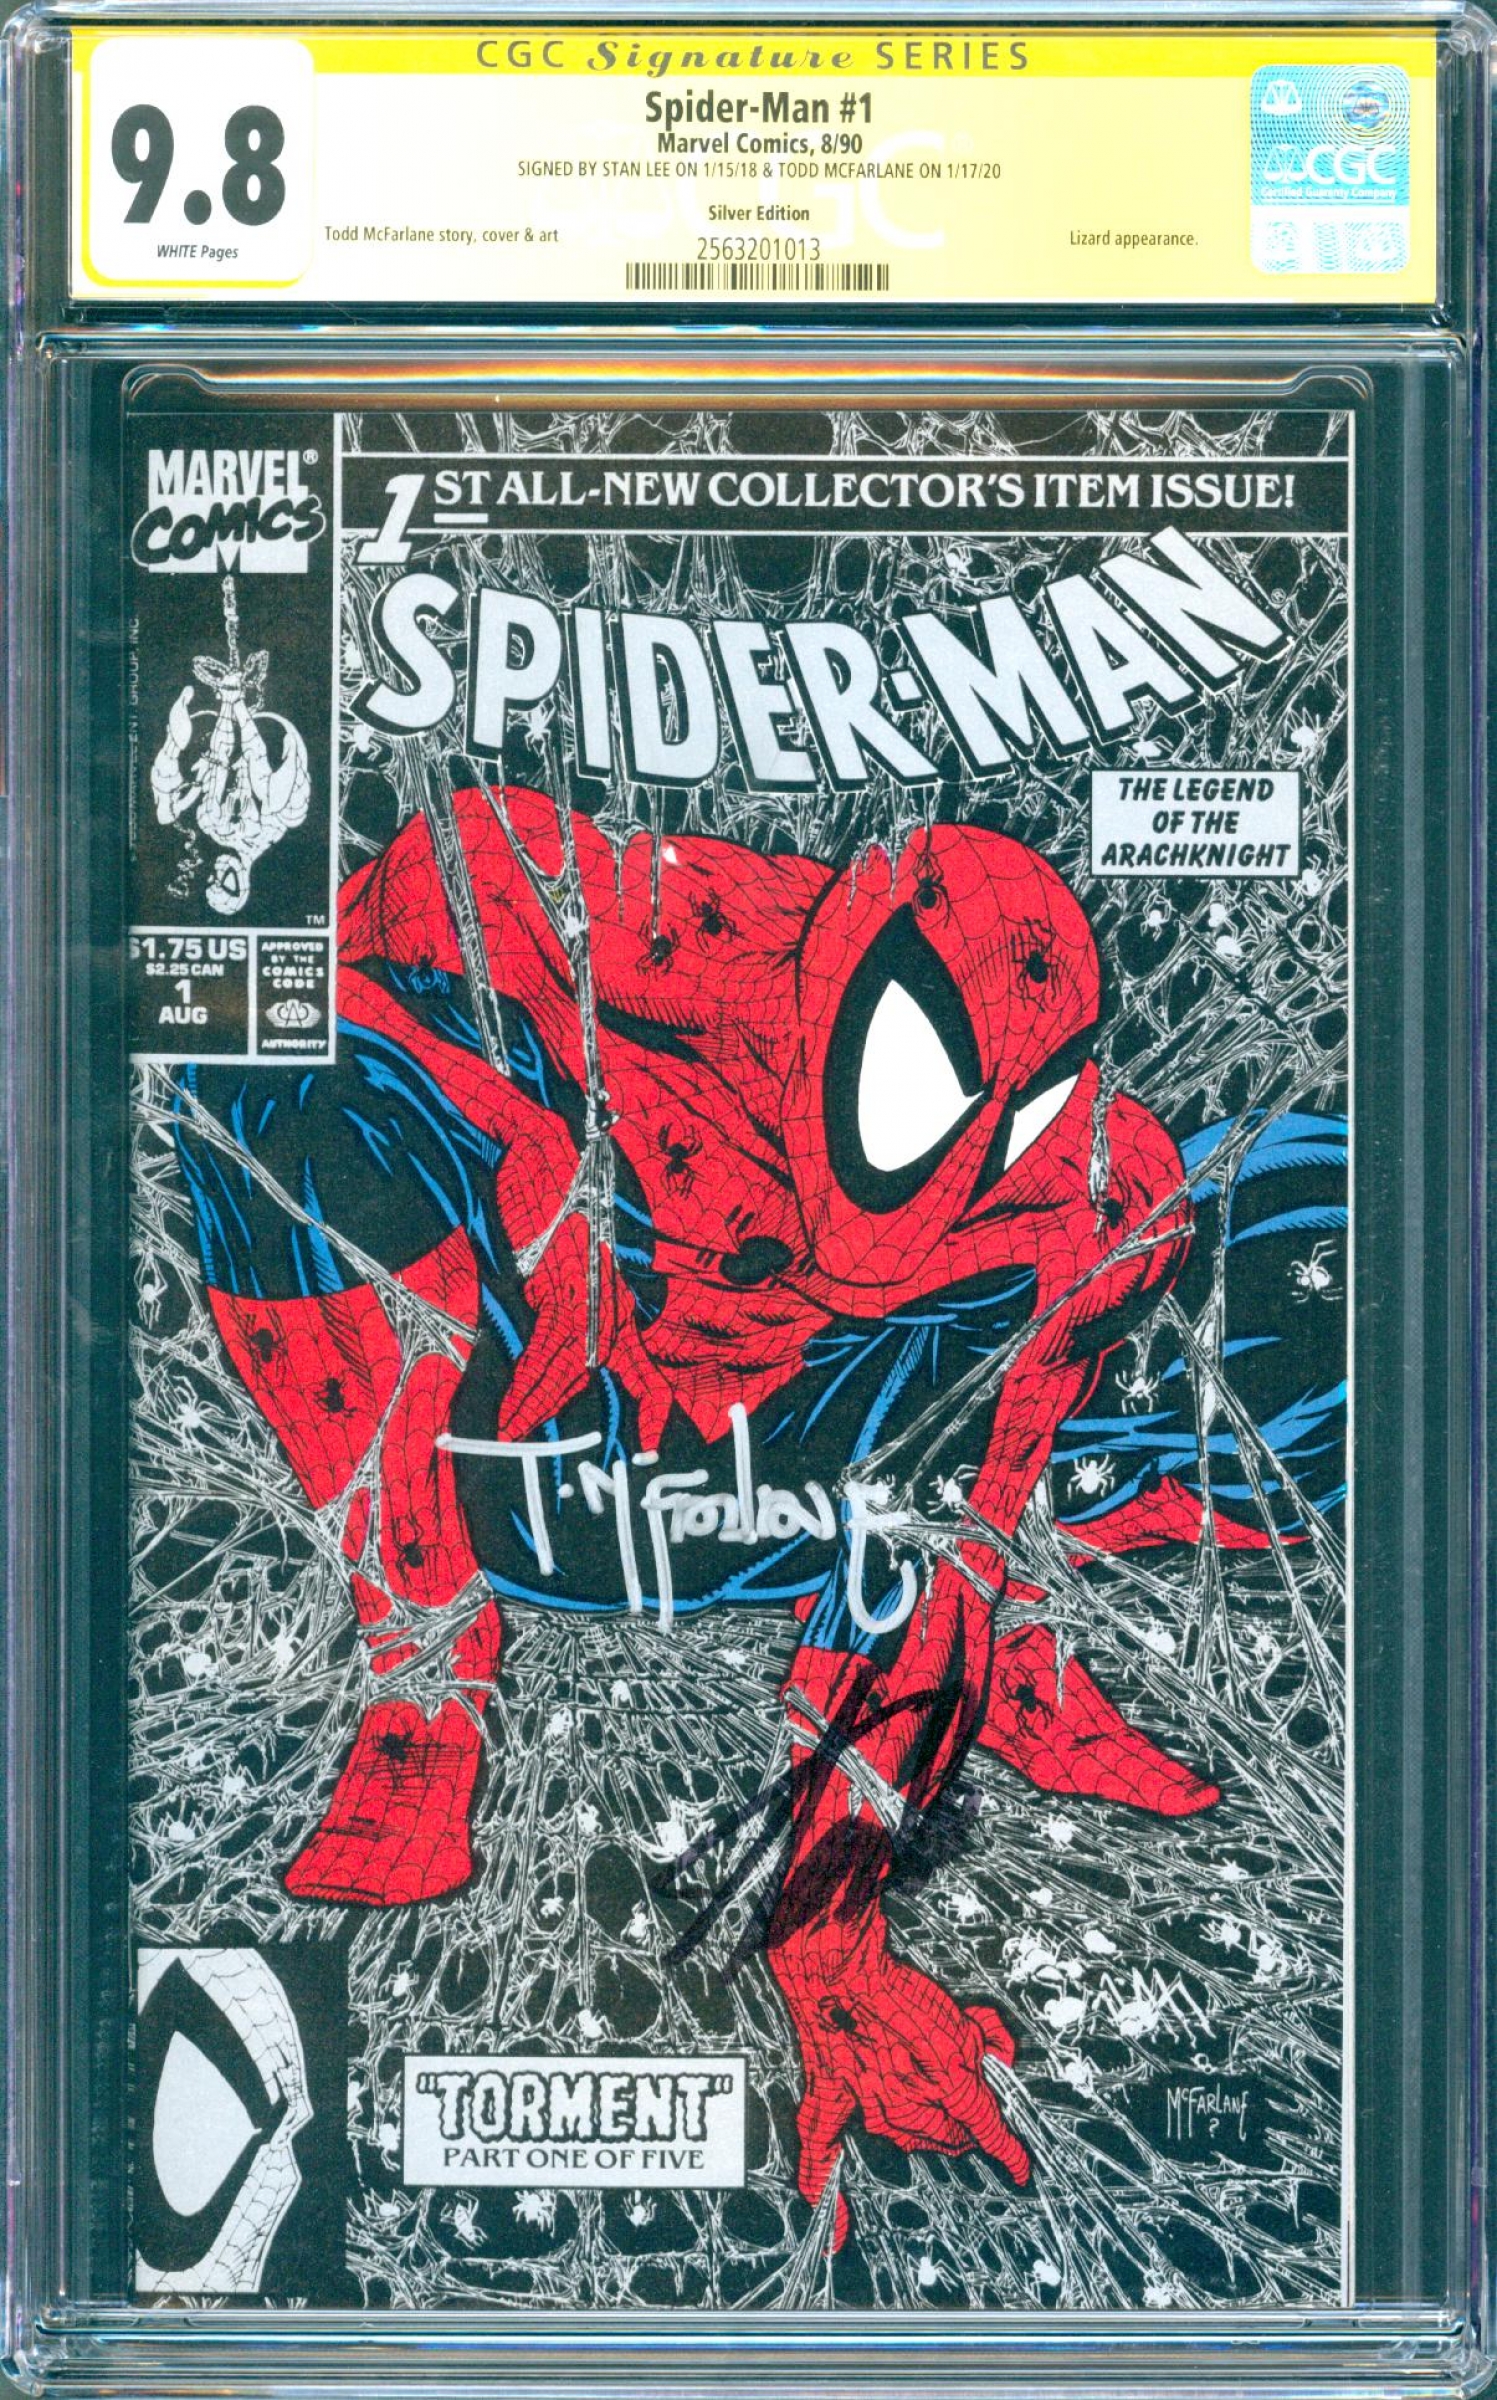 Spider-Man #1 CGC 9.8 w CGC Signature SERIES